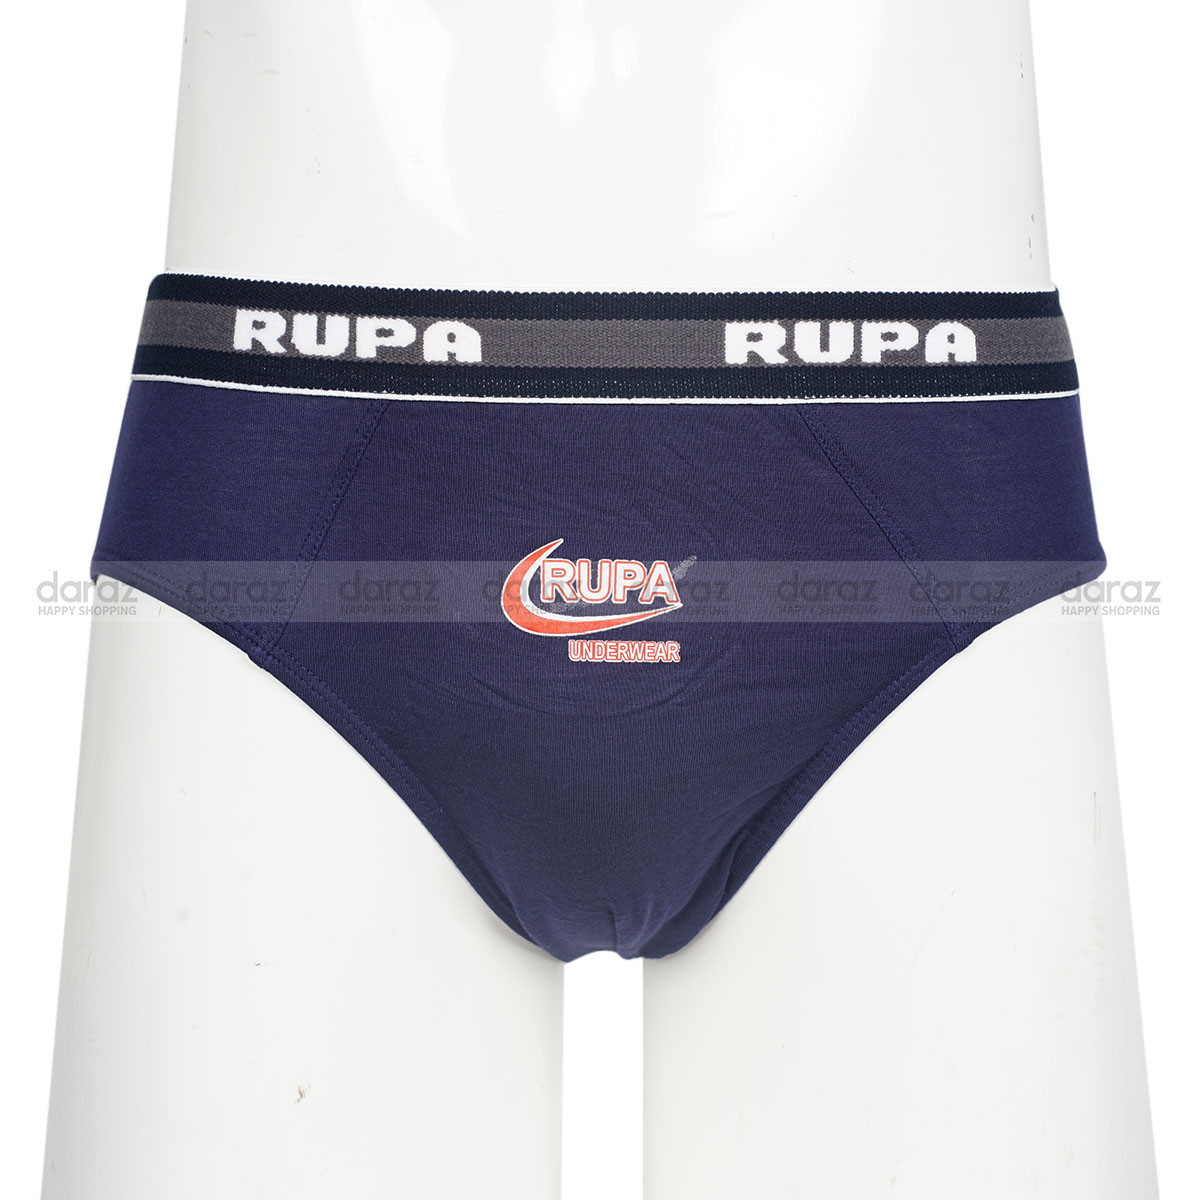 Other, Brand New Rupa Underwear